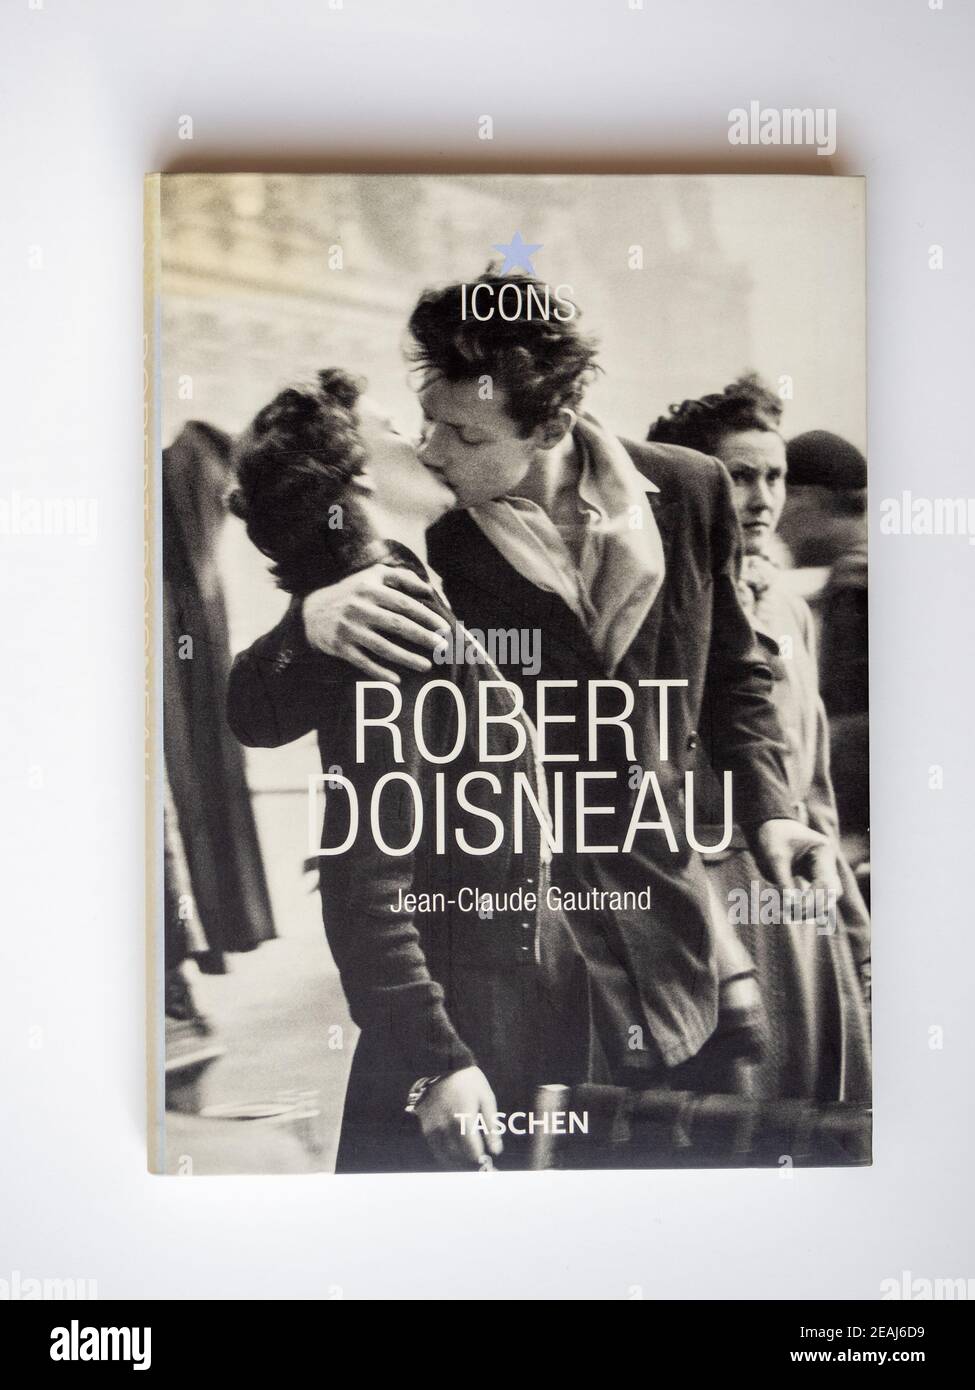 Foto d'archivio di un libro cartaceo sul fotografo Robert Doisneau di Jean Claude Gautrand, pubblicato nel 2003 da Taschen nella loro serie di icone. Foto Stock